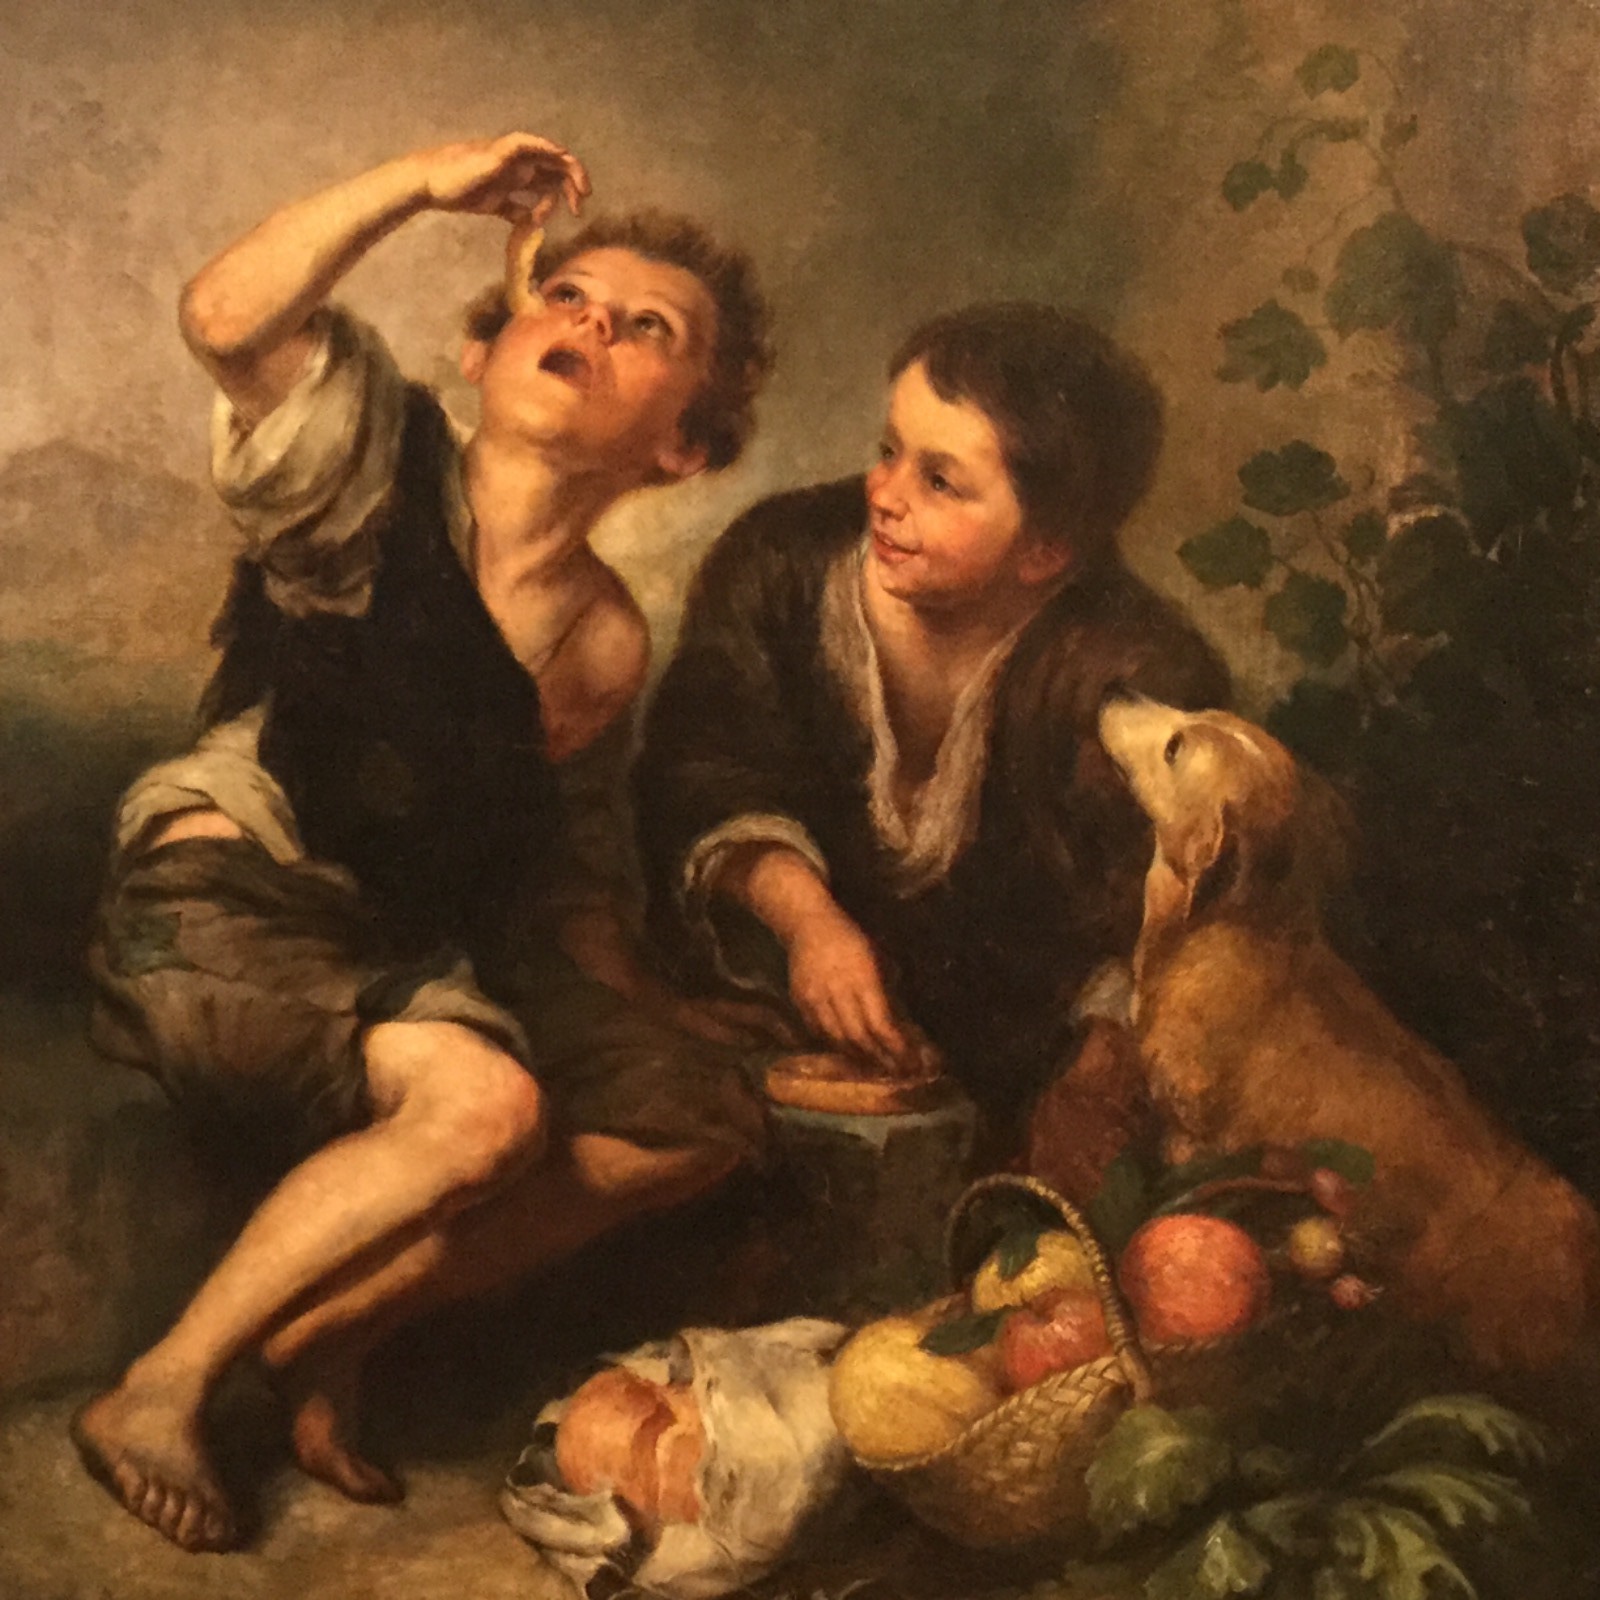 Мальчик с собакой бартоломе. Бартоломе Эстебан Мурильо (1617-1682). Бартоломе Эстебан Мурильо. Бартоломео Эстебан Мурильо (1618—1682). Художник Бартоломе Эстебан Мурильо.